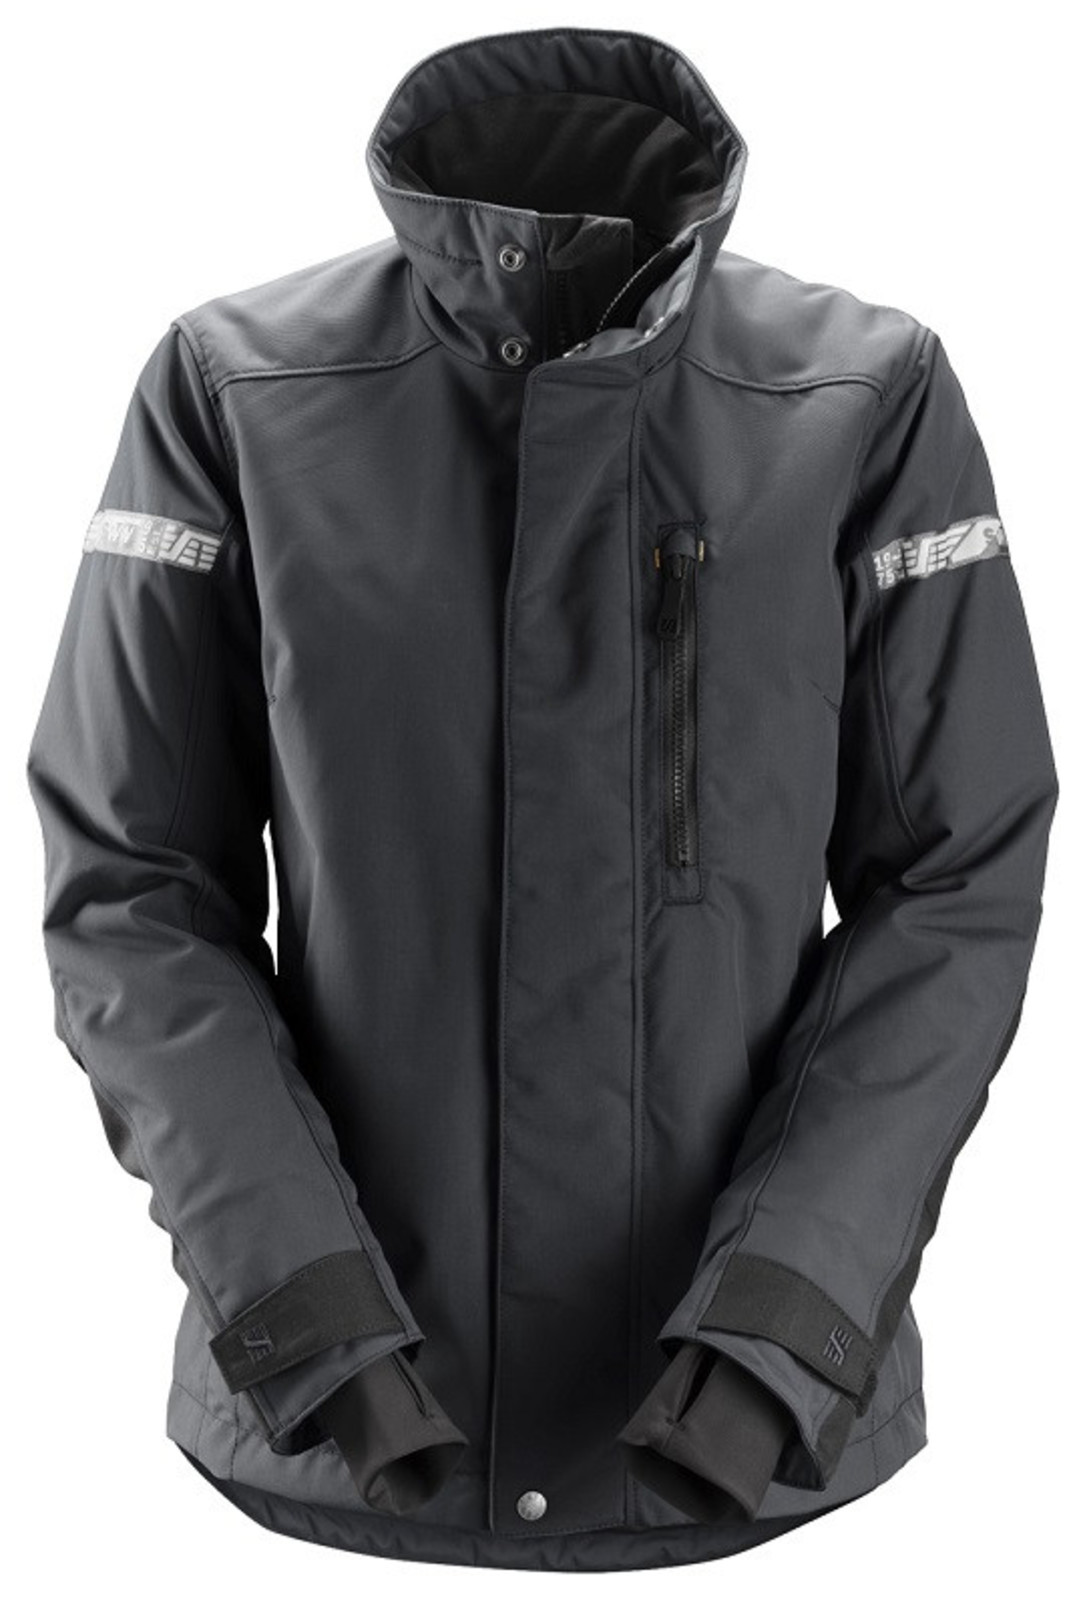 Dámska zimná bunda Snickers® AllroundWork 37.5® - veľkosť: S, farba: oceľovo sivá